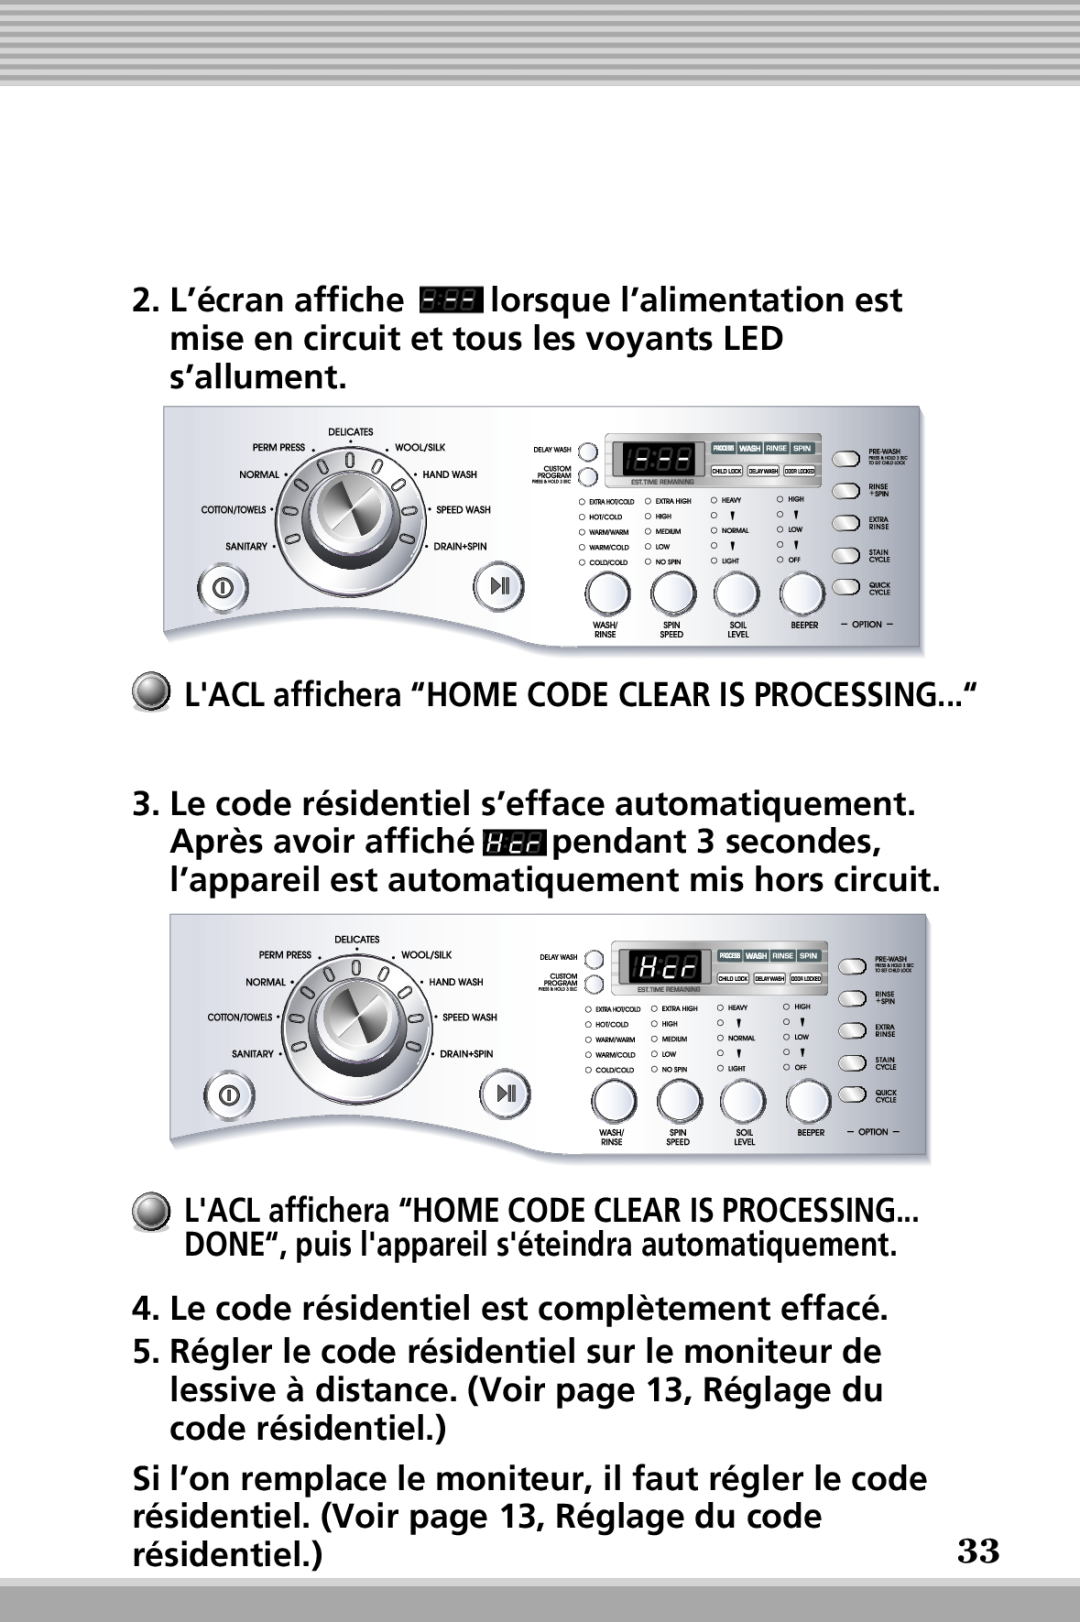 LG Electronics RLM10 LACL affichera “HOME CODE CLEAR IS PROCESSING...“, Le code résidentiel s’efface automatiquement 